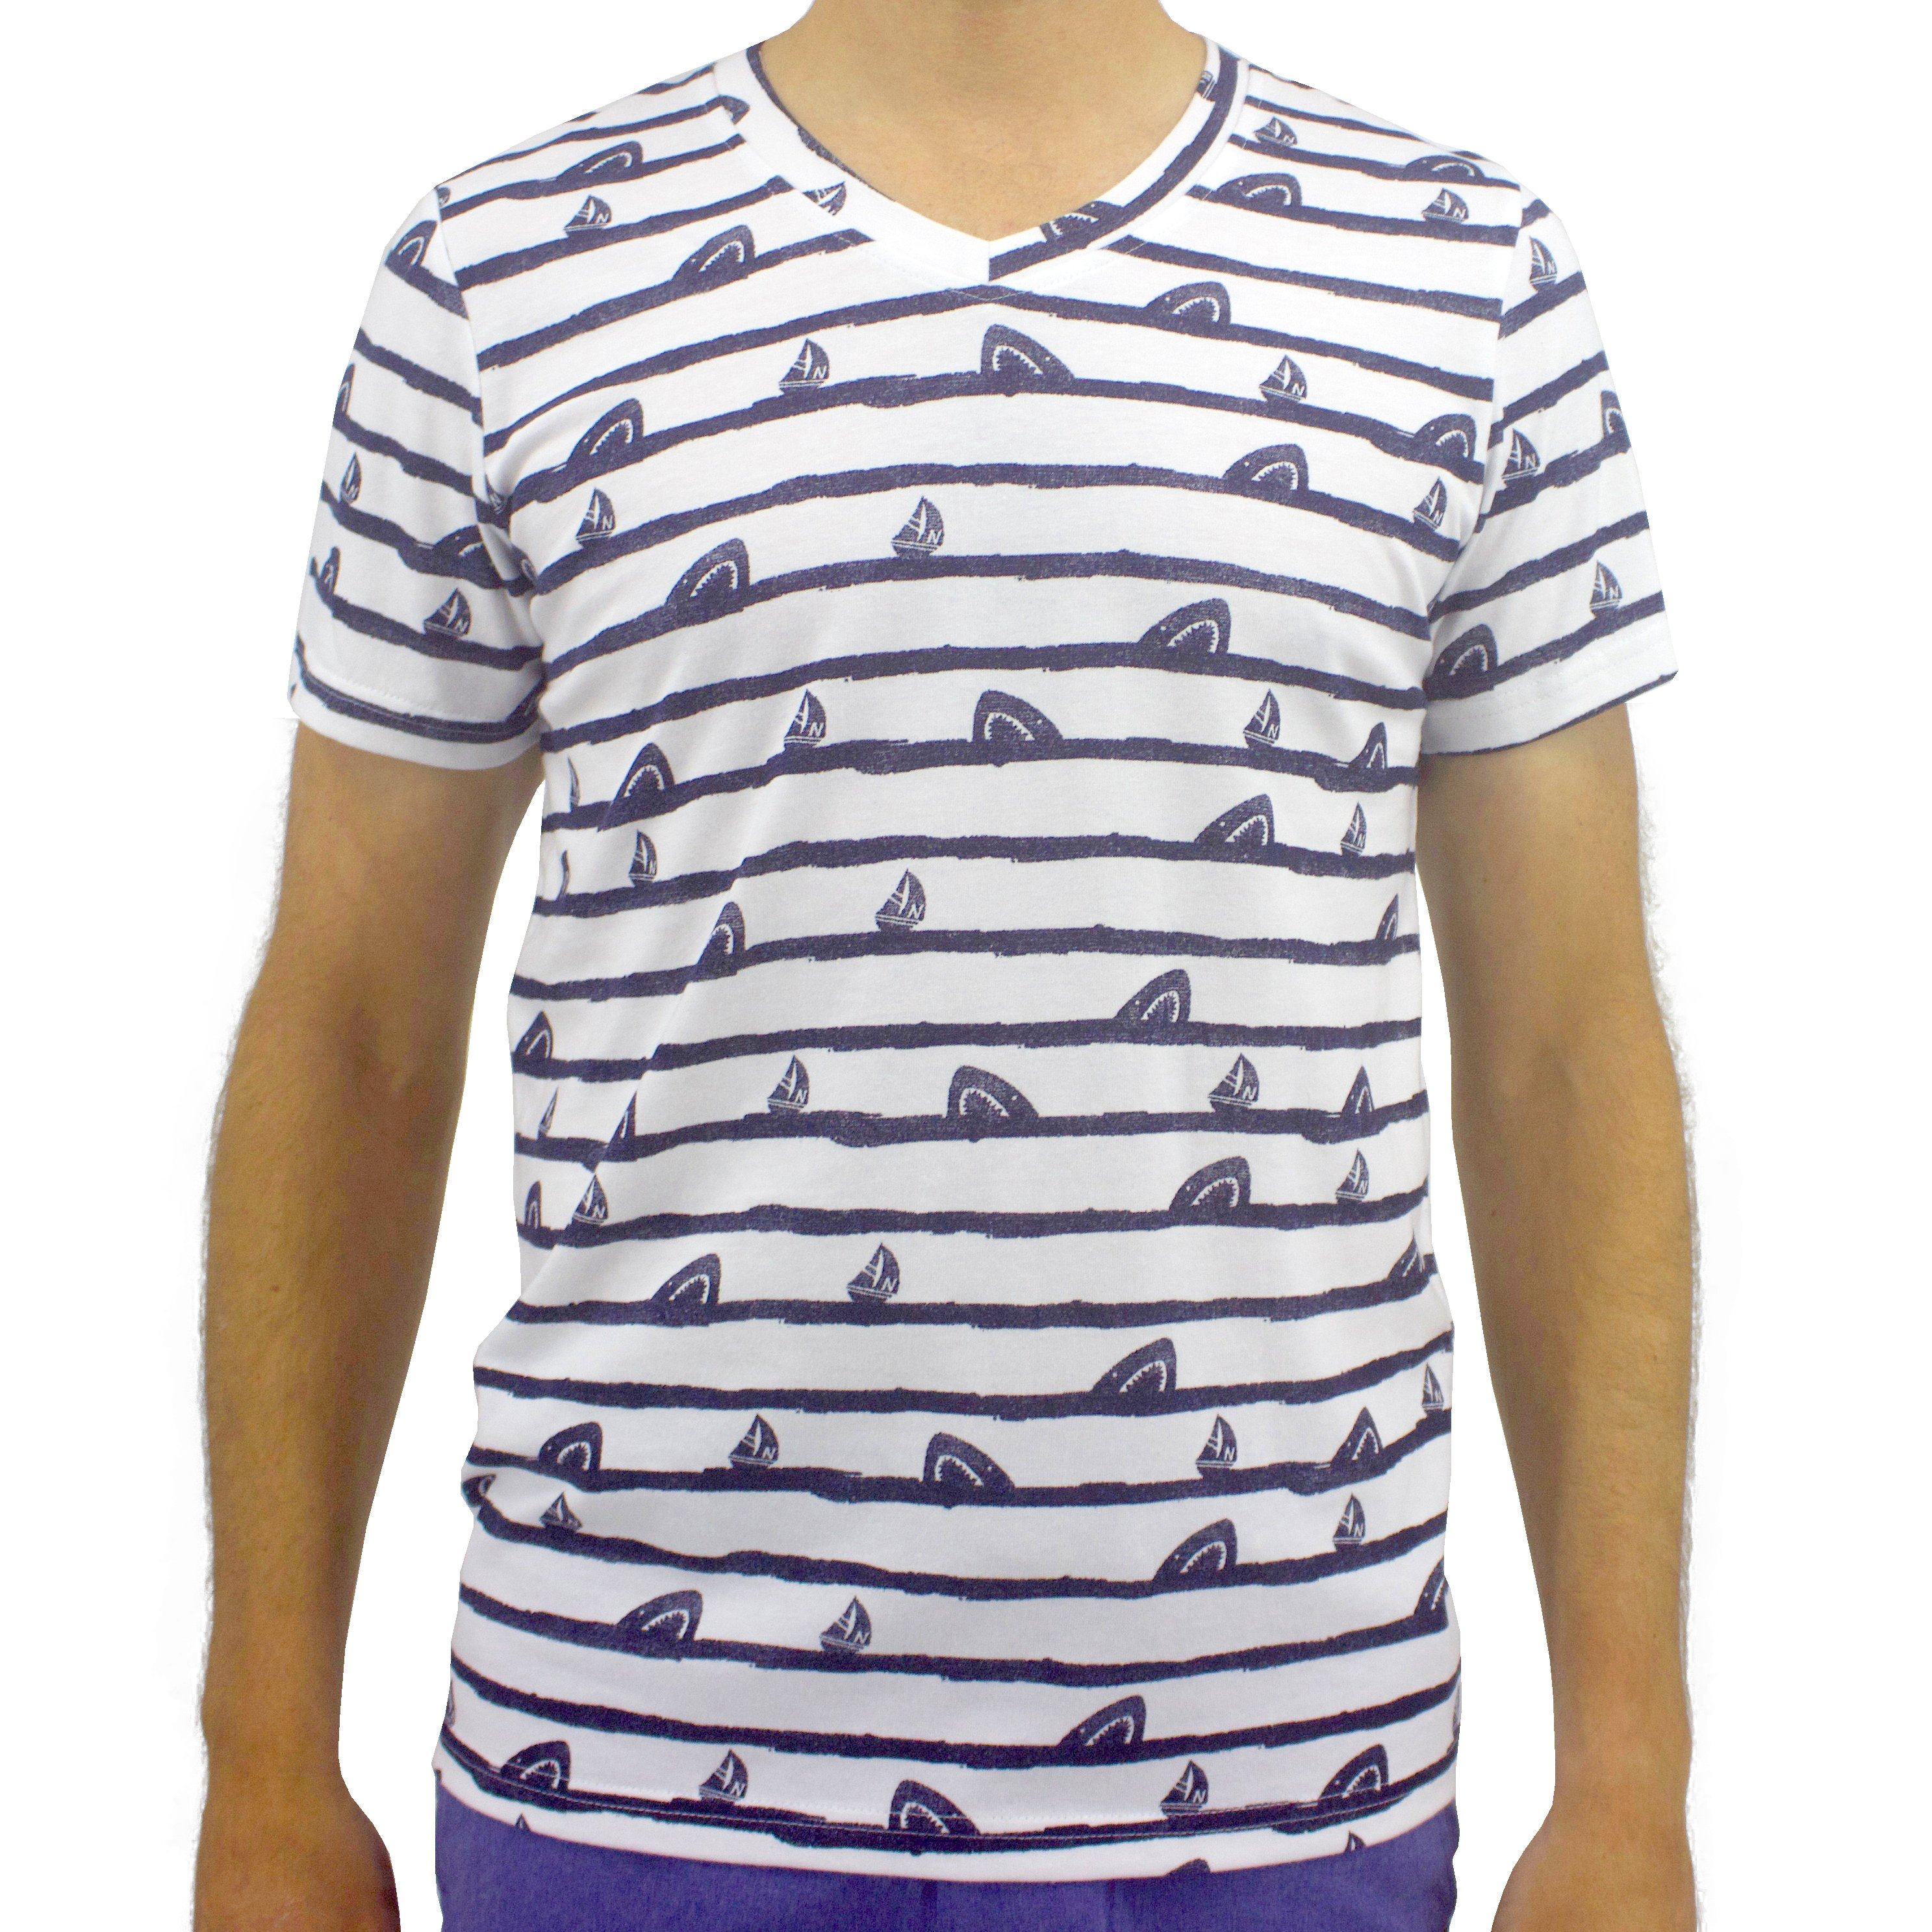 Men's White Striped V-Neck Shark Print T-Shirt Casualwear